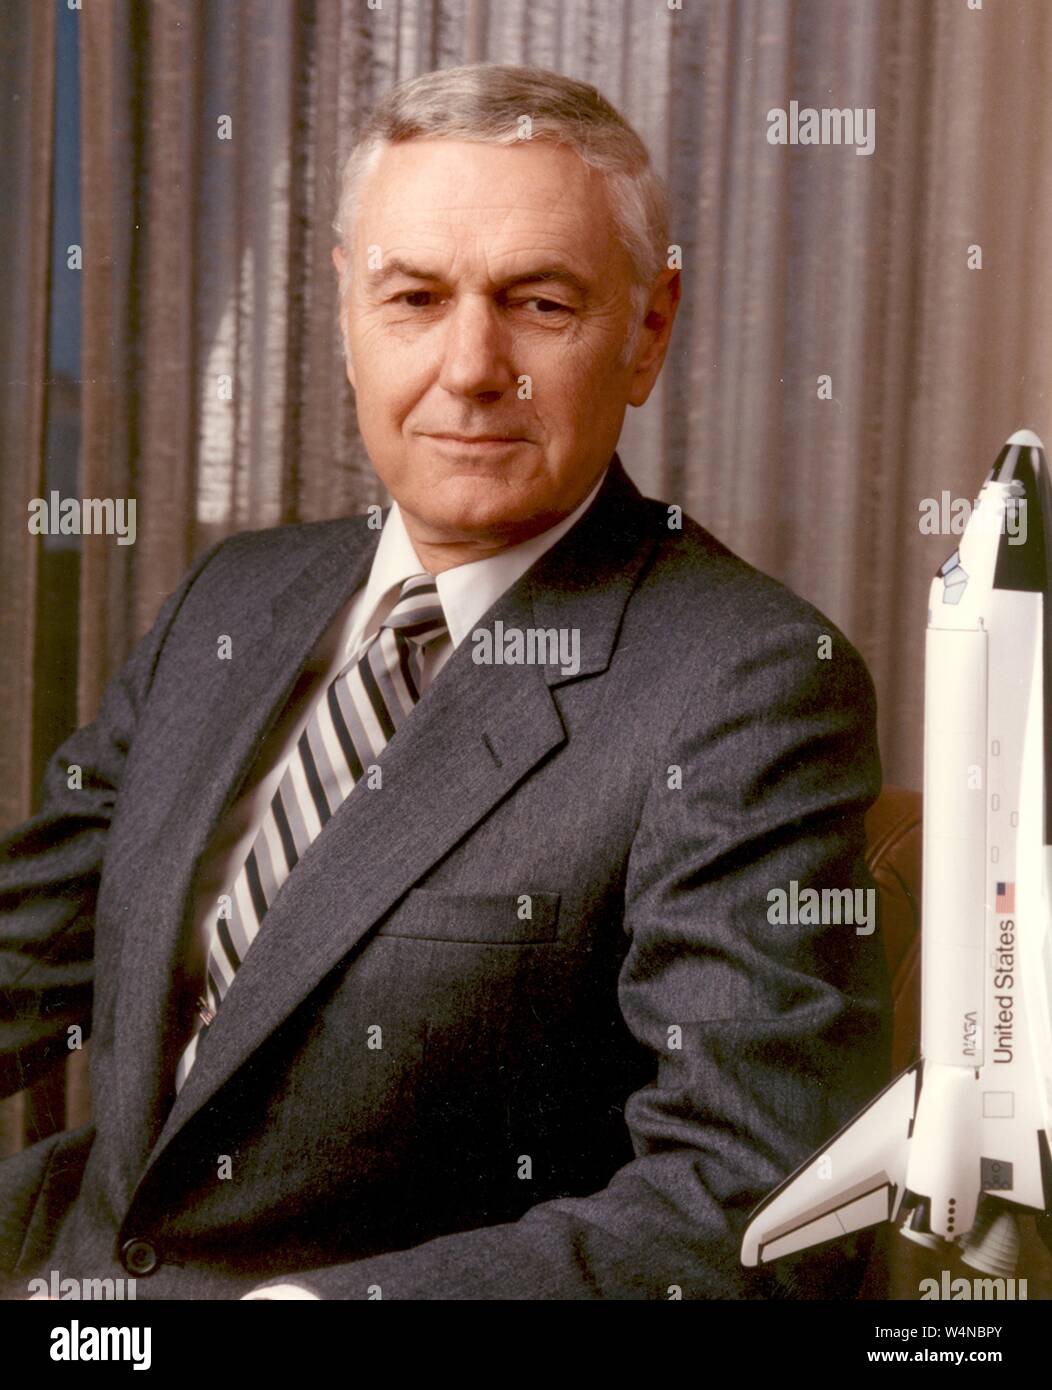 Retrato de James Montgomery Beggs, el 6º Administrador de NASA de Pittsburgh, Pennsylvania, 2002. Imagen cortesía de la Administración Nacional de Aeronáutica y del Espacio (NASA). () Foto de stock